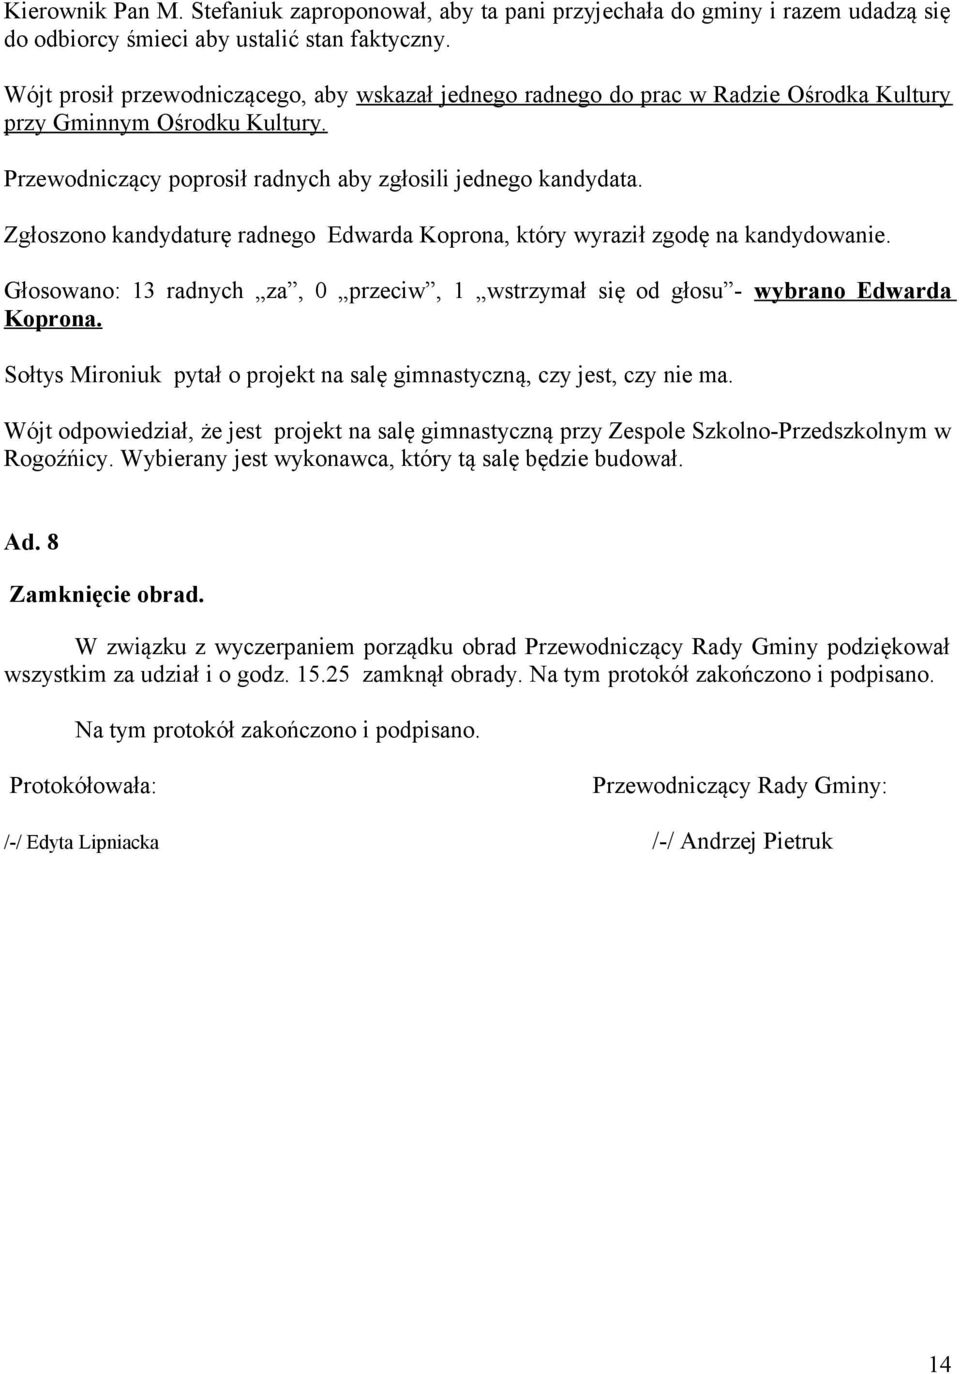 Zgłoszono kandydaturę radnego Edwarda Koprona, który wyraził zgodę na kandydowanie. Głosowano: 13 radnych za, 0 przeciw, 1 wstrzymał się od głosu - wybrano Edwarda Koprona.